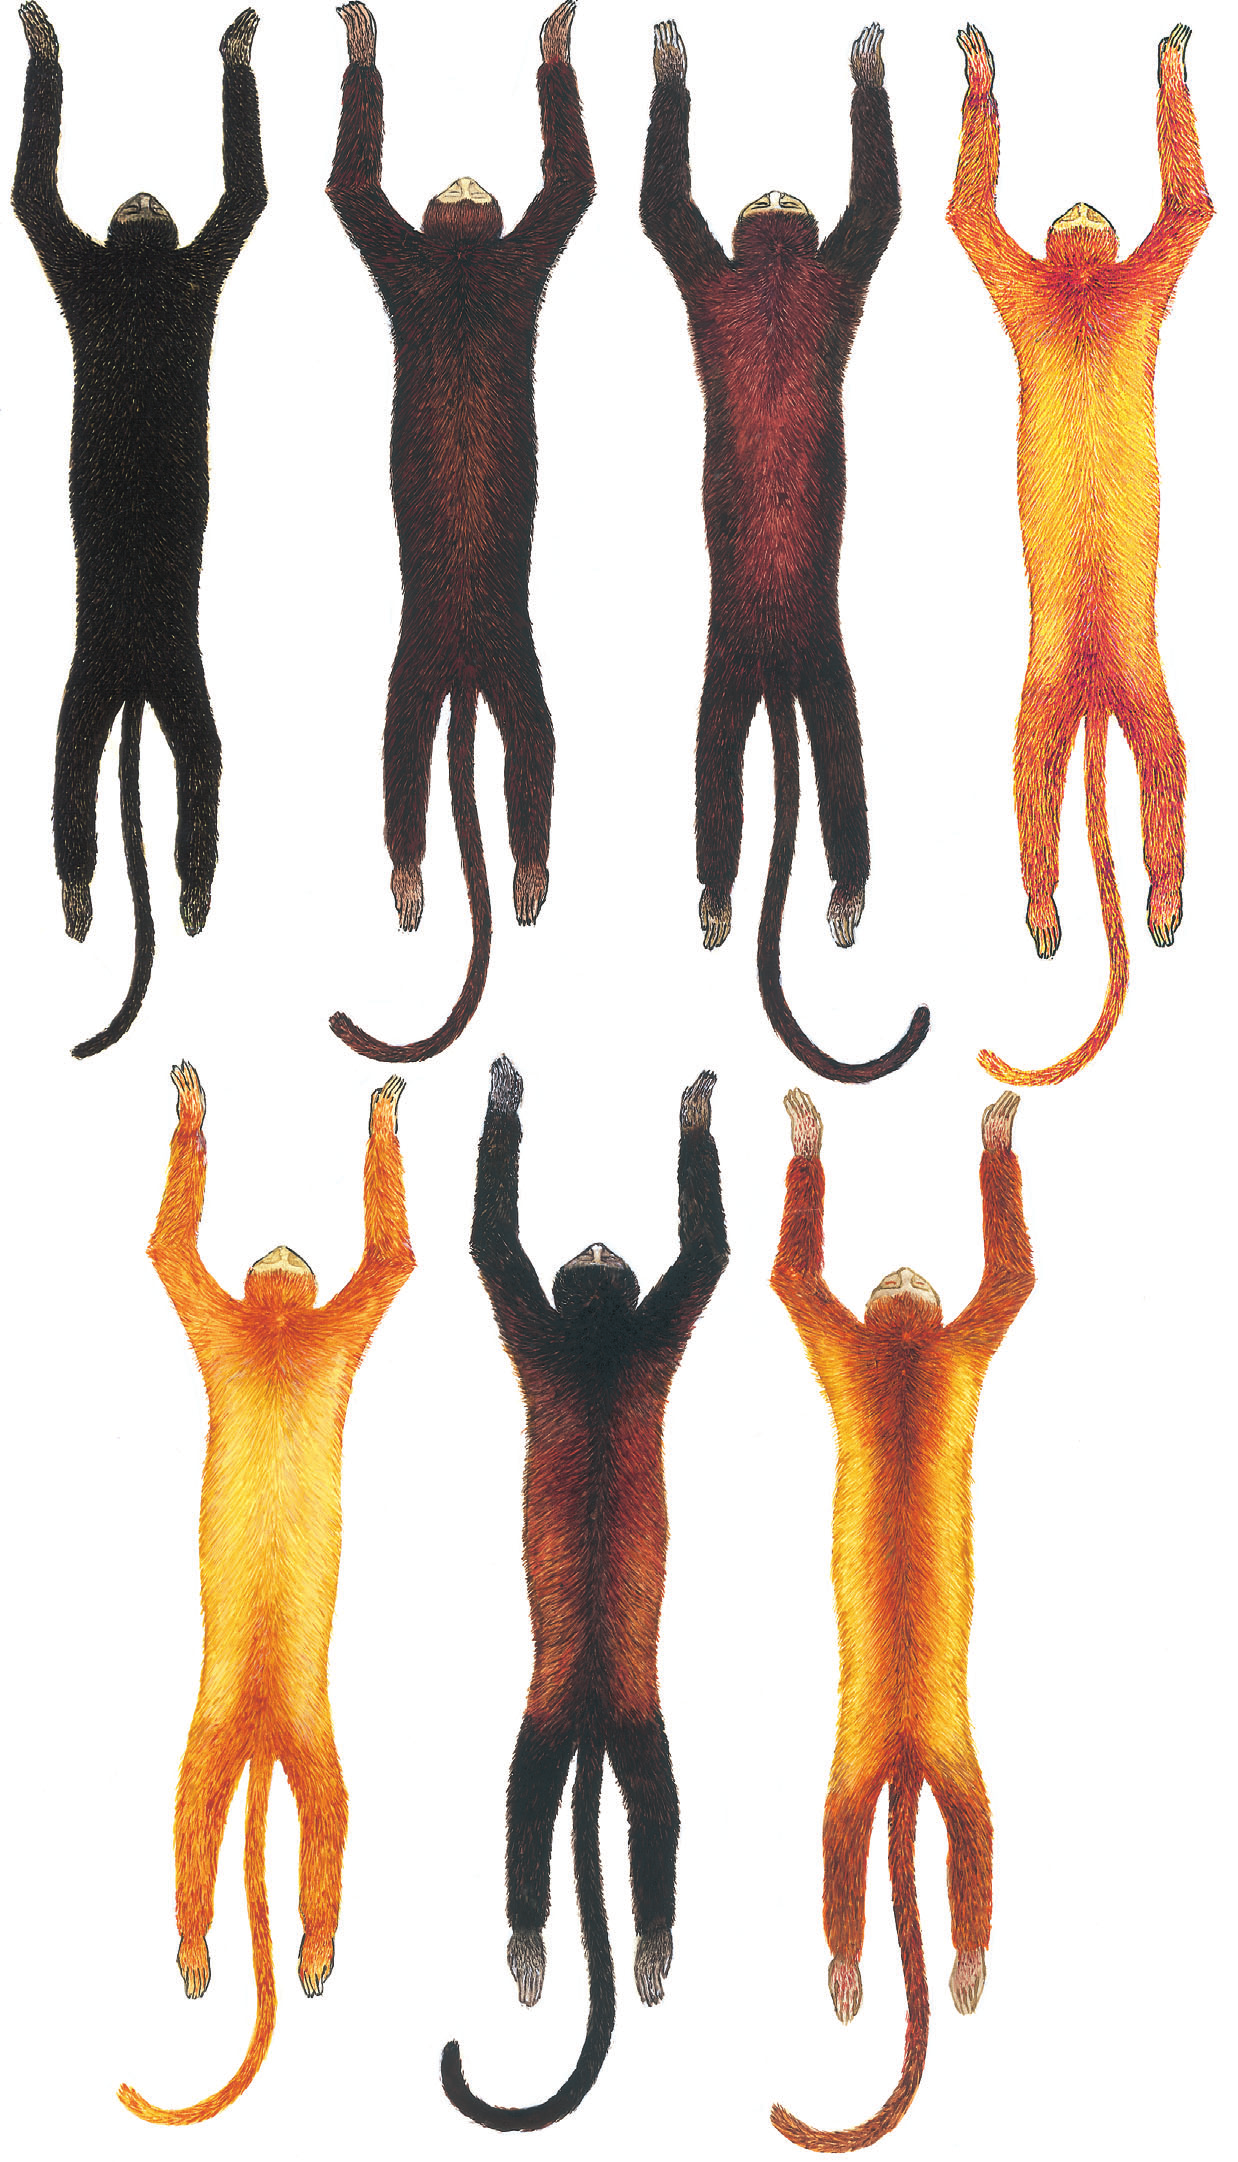 110 R. Gregorin 44 45 48 46 49 47 50 Figuras 44-50. Ilustração, em vista dorsal, mostrando os padrões de coloração da pelagem no complexo A. seniculus : (44) A. nigerrima (MZUSP 5295); (45) A.